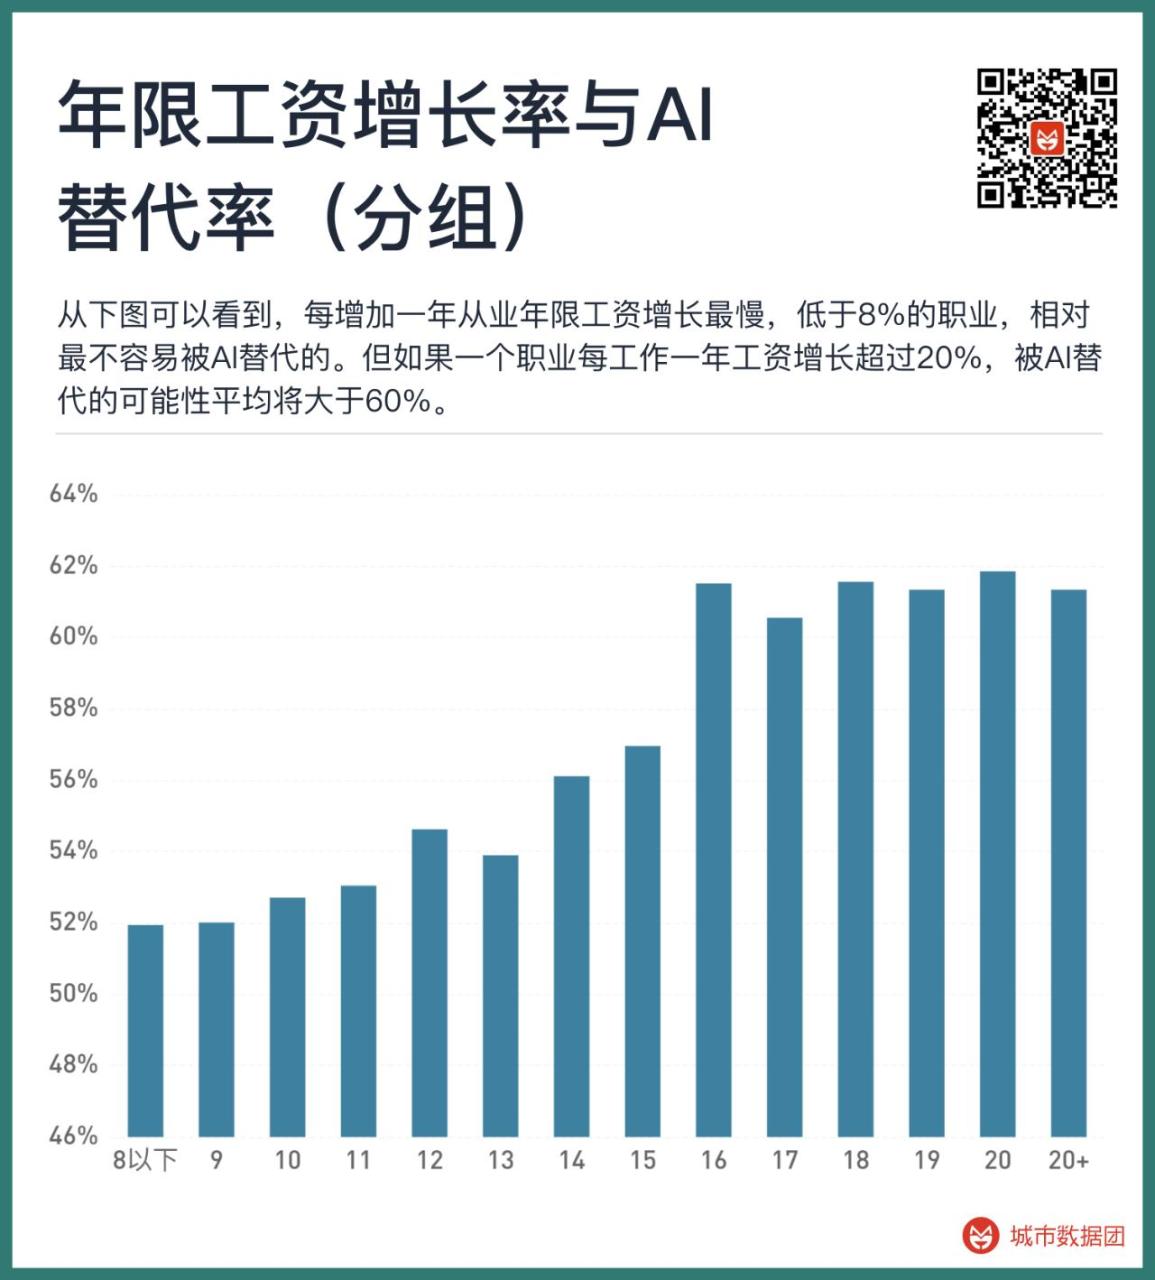 中国1639种职业中AI替代率最高和最低的前25种各是哪些插图7